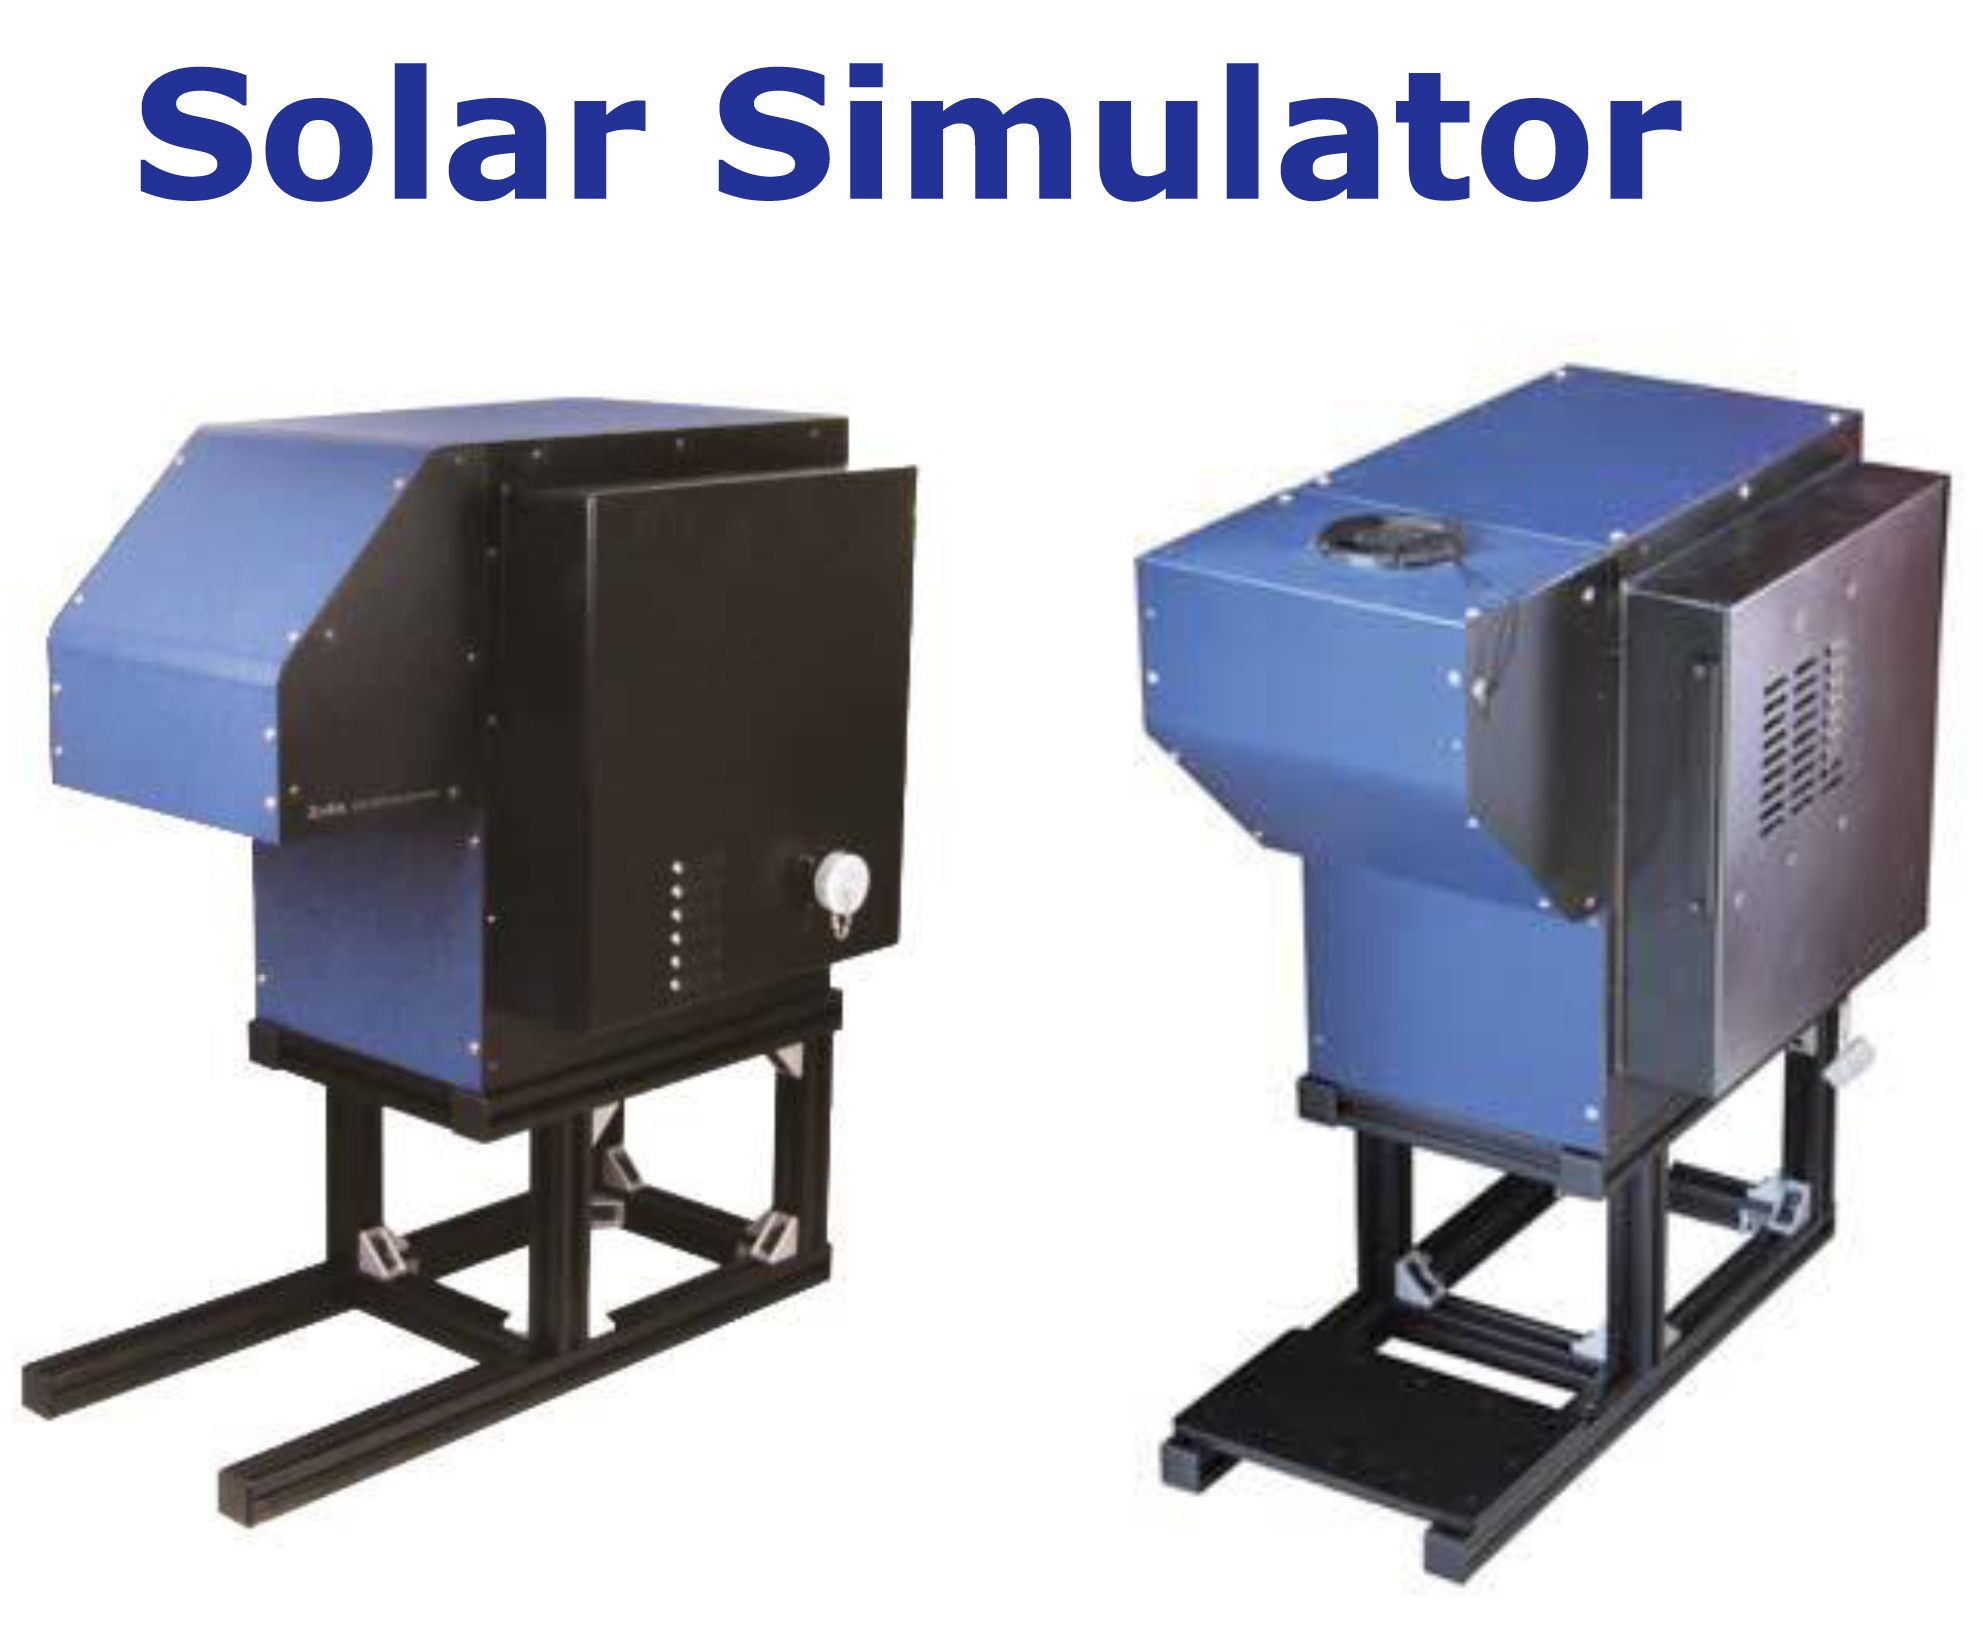 (Zolix) Solar Simulator